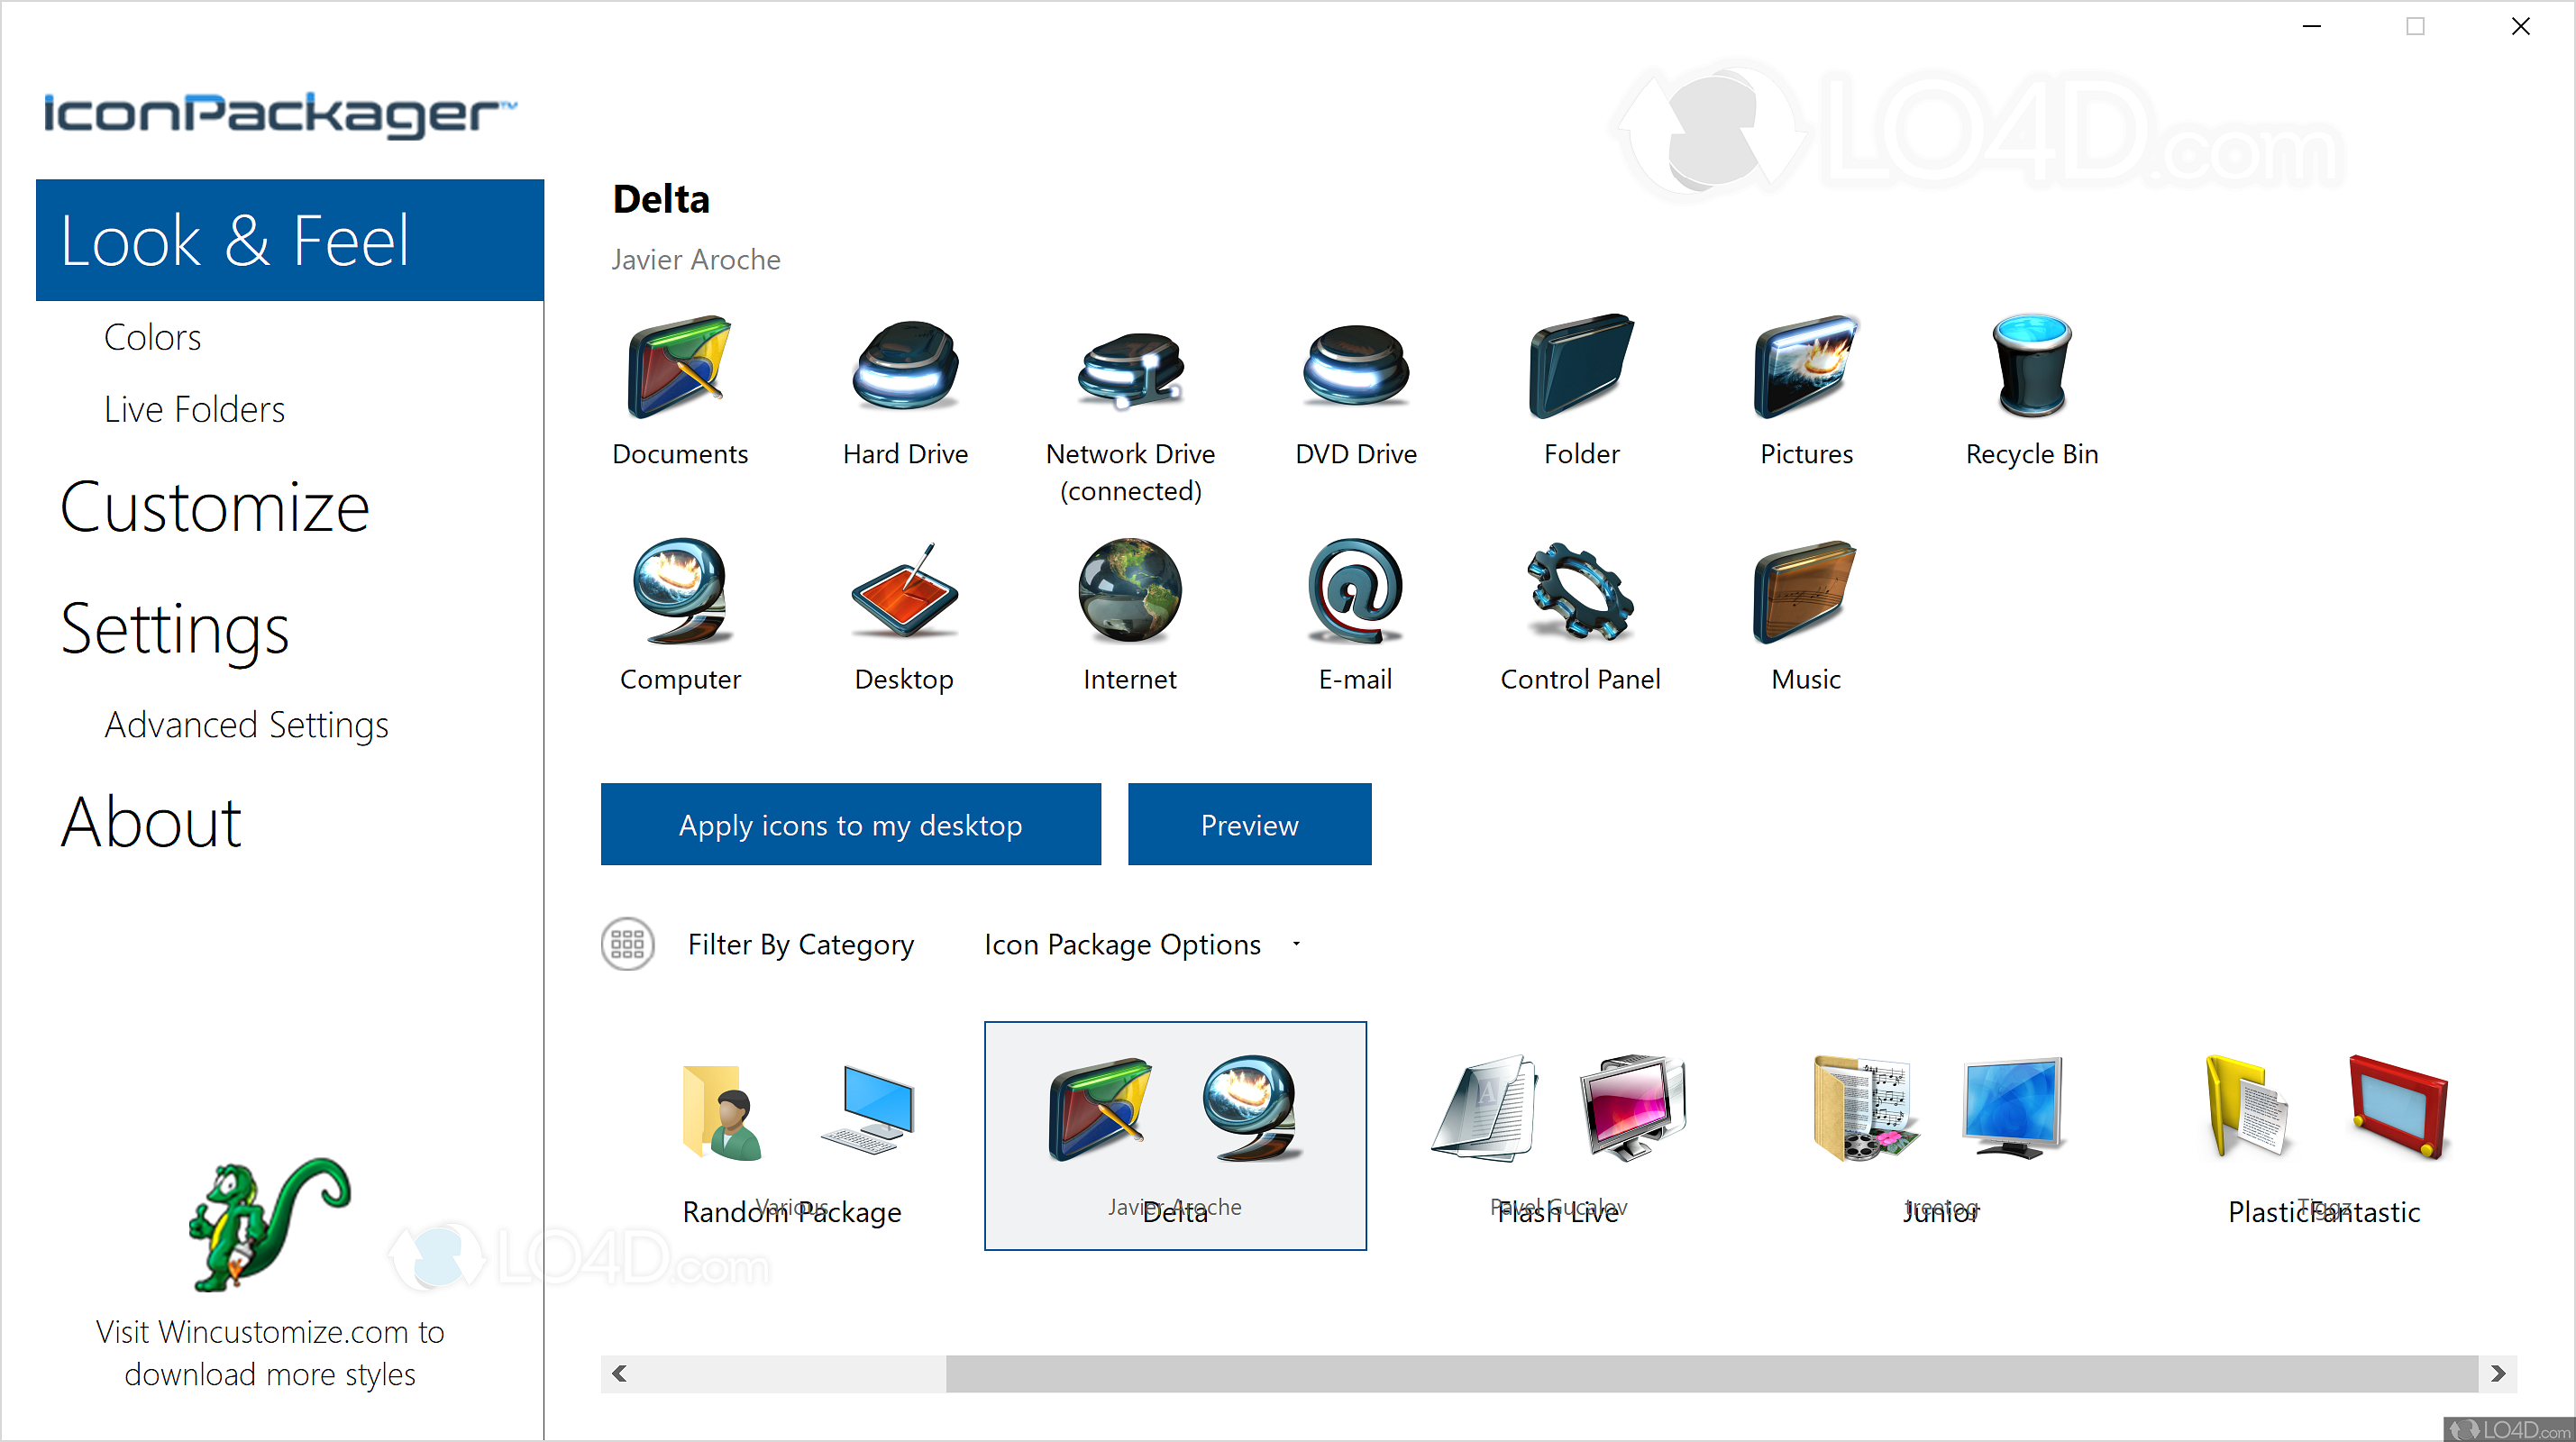 DesktopOK x64 11.06 for ios download free